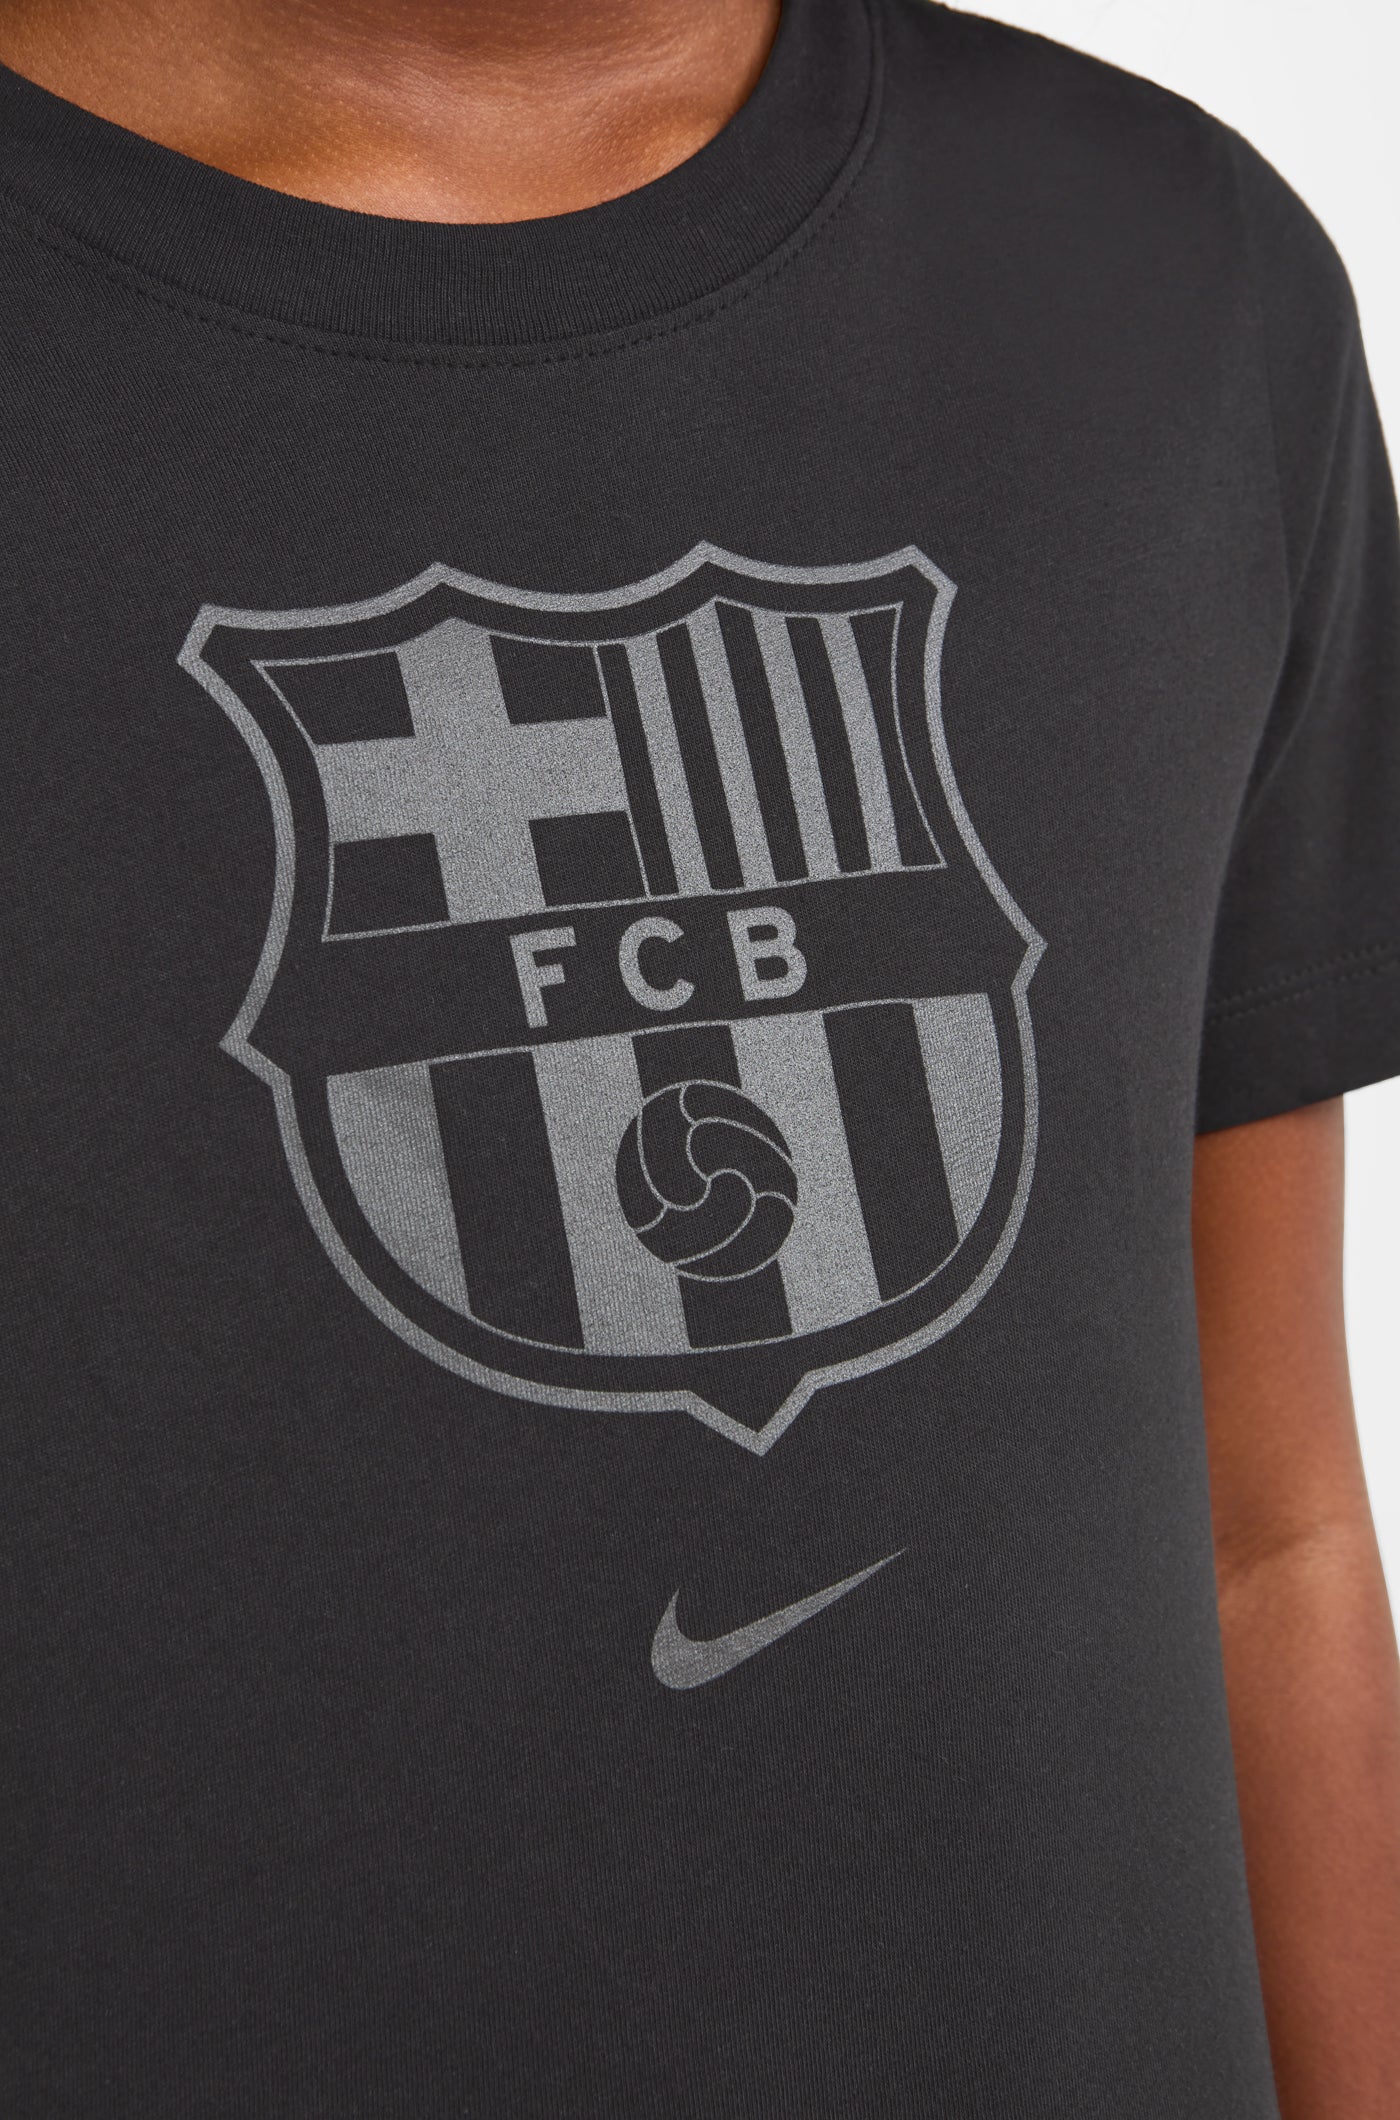 Camiseta manga corta escudo FC Barcelona - Junior